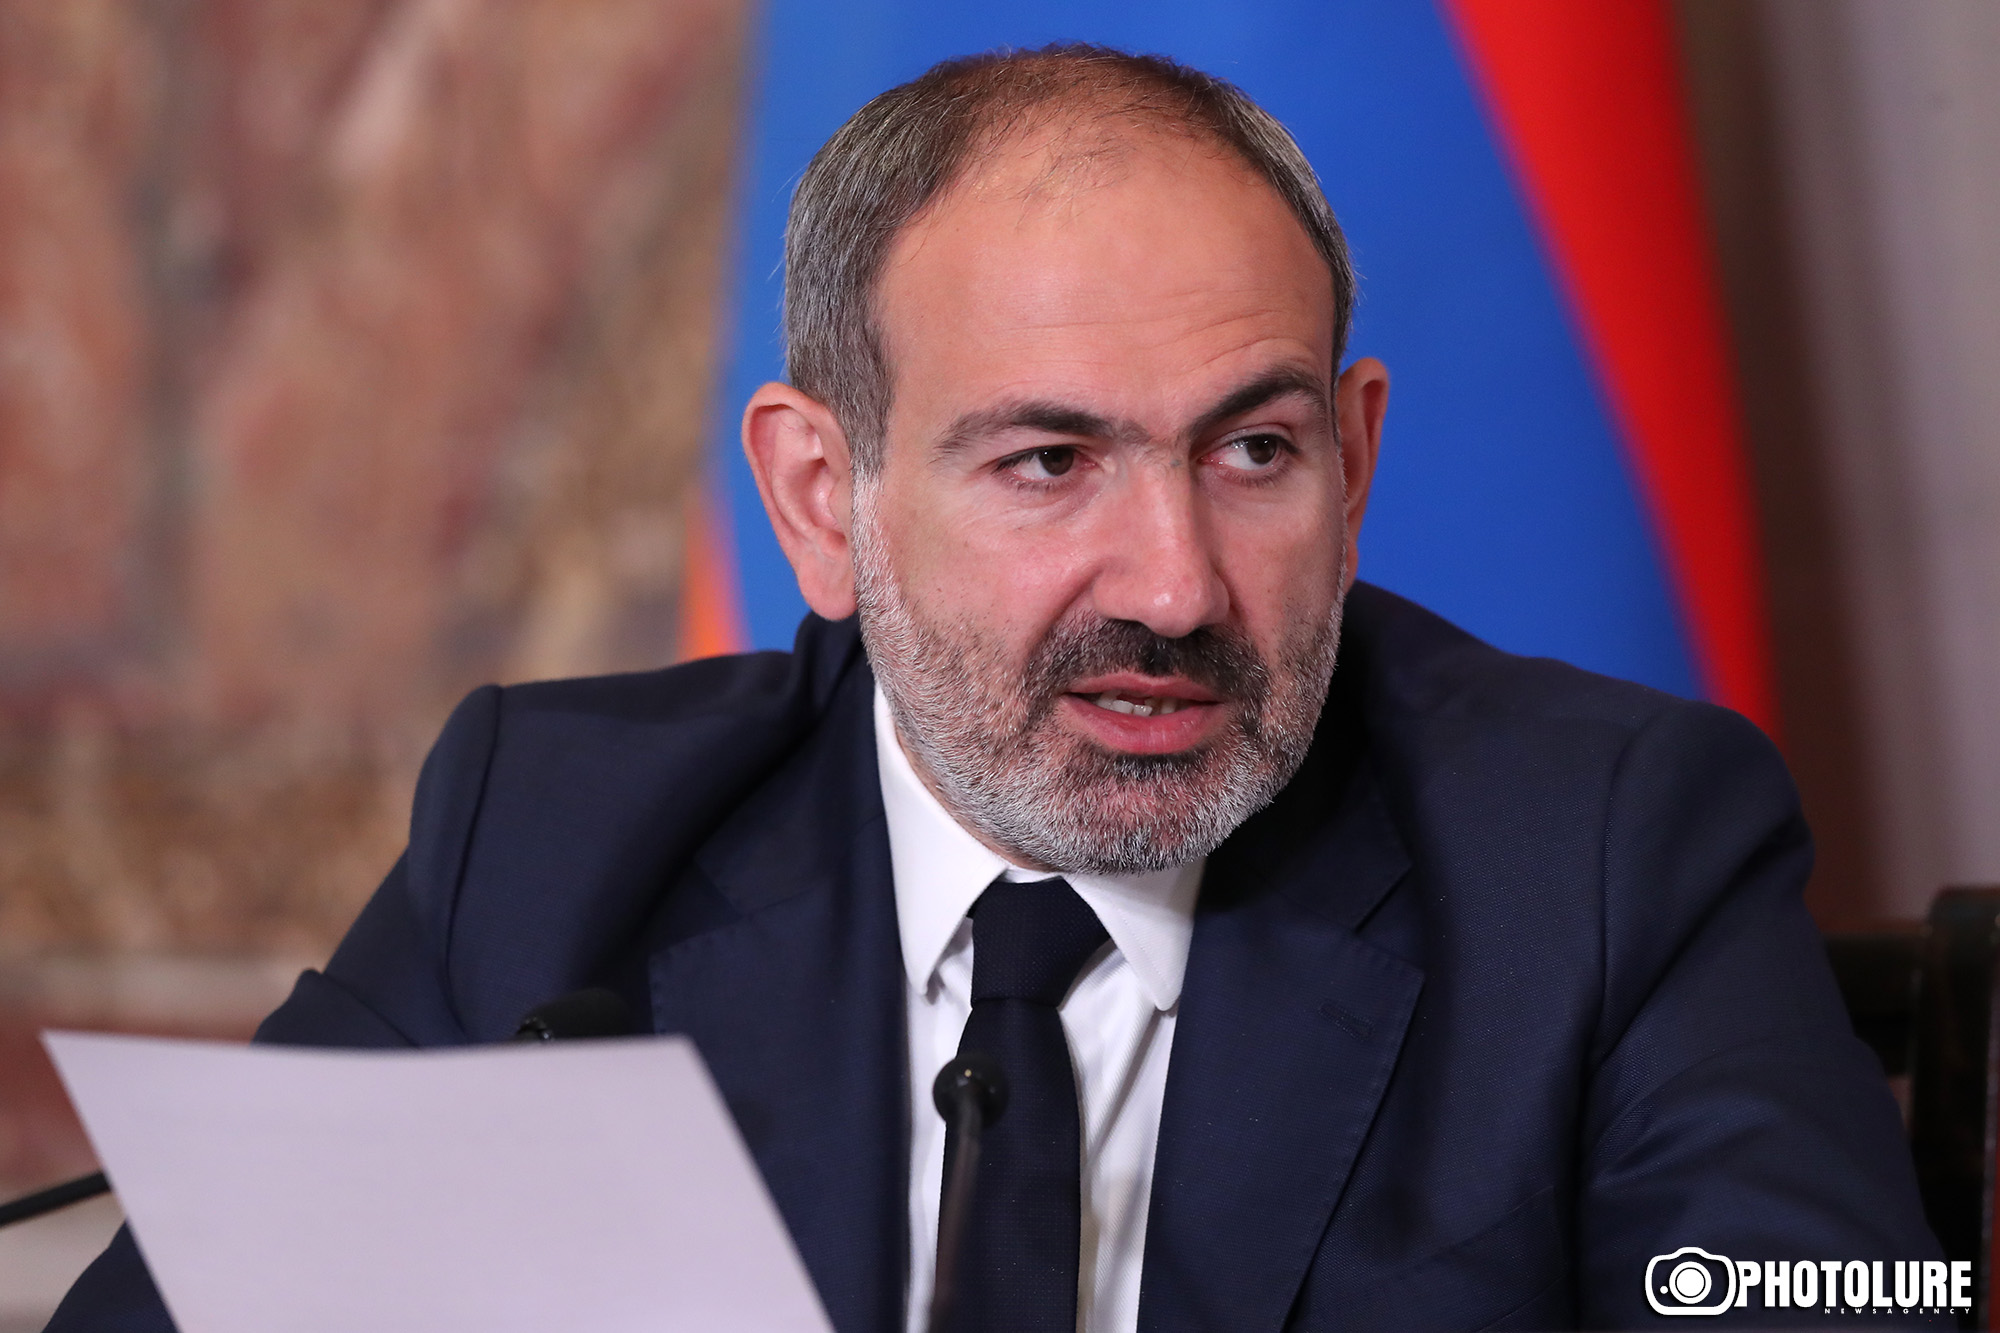 Де-факто международные резервы Армении никогда не превышали нынешних размеров - Пашинян